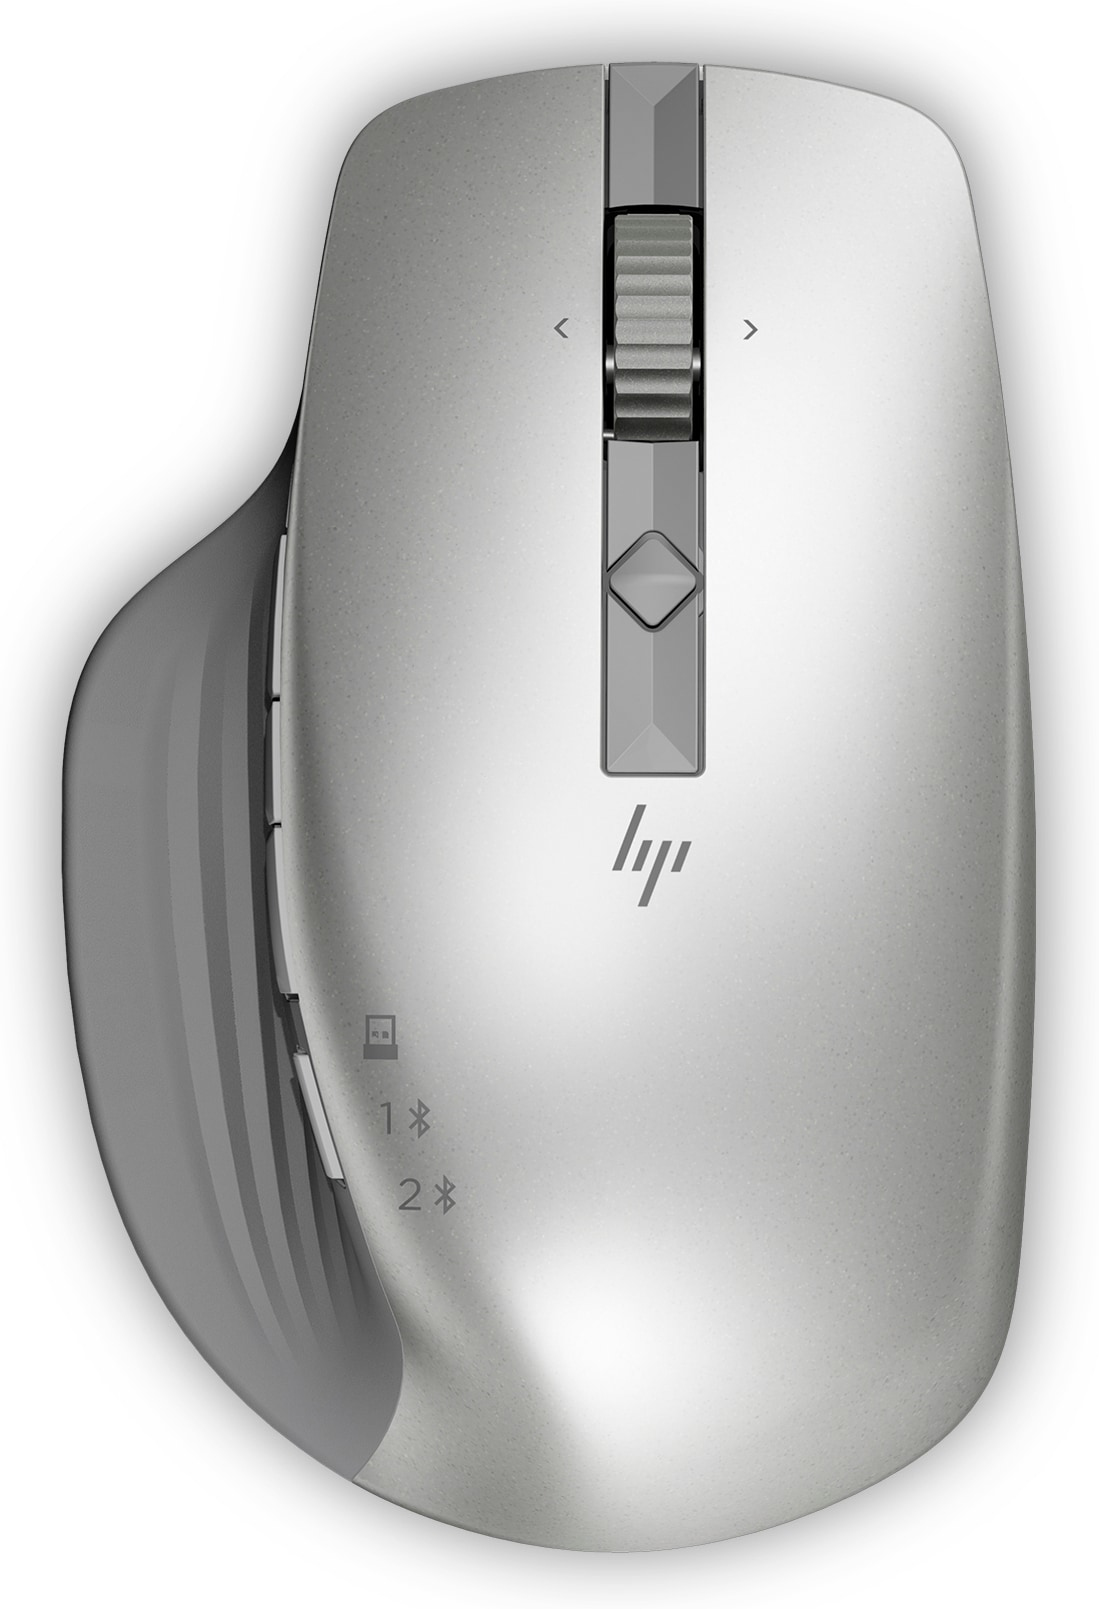 Hoorzitting Commotie zonnebloem HP 930 Creator draadloze muis, 41 in voorraad distributeur/groothandel voor  resellers om te verkopen - Stock In The Channel